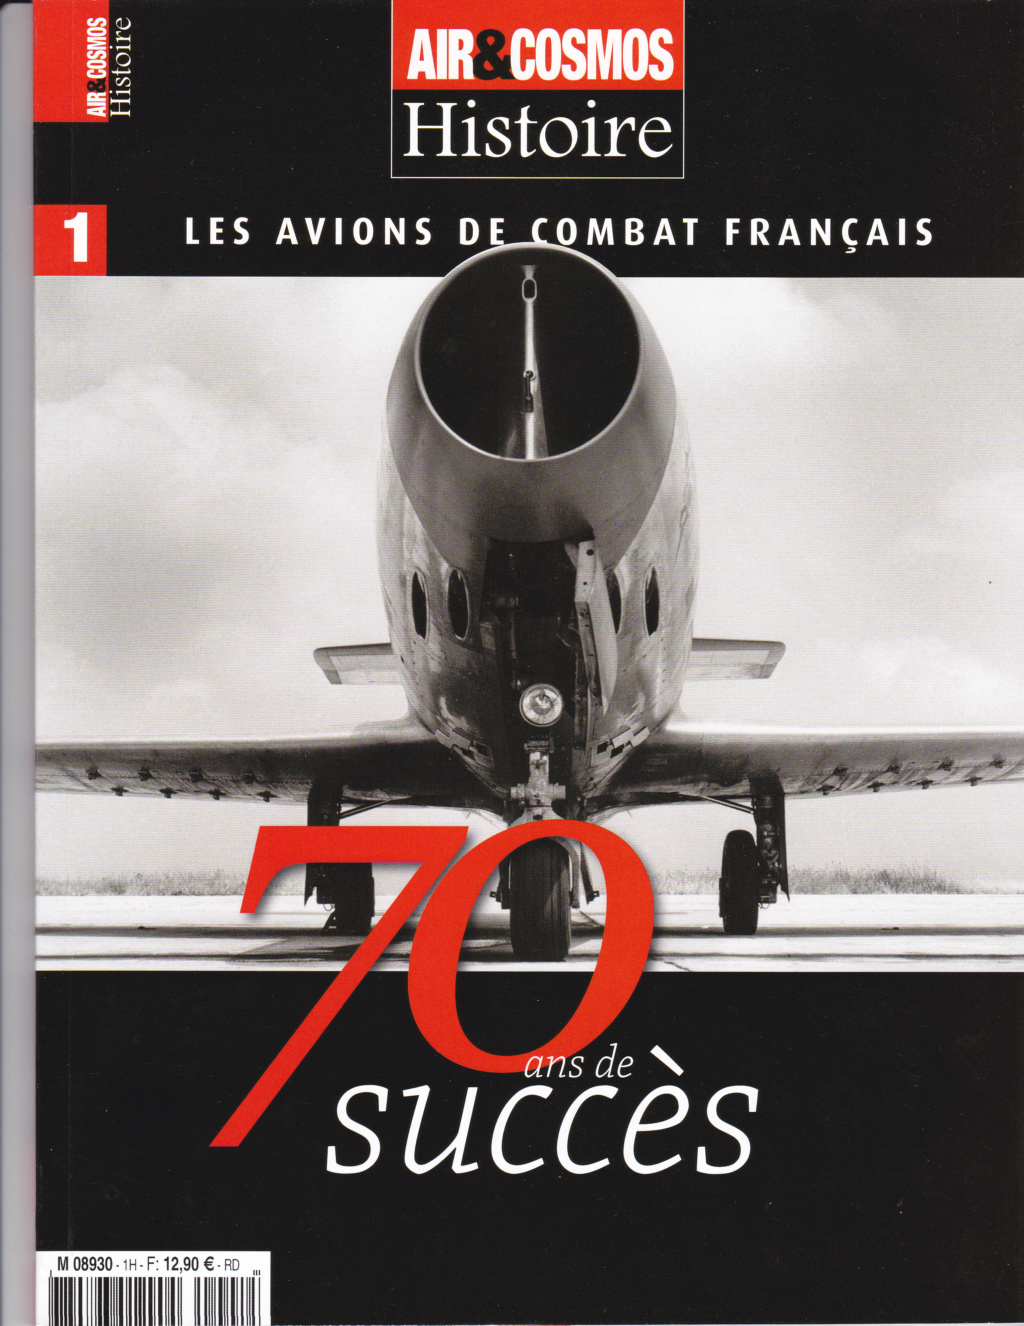 Les avions de combat français - 70 ans de succès Ac_avi10